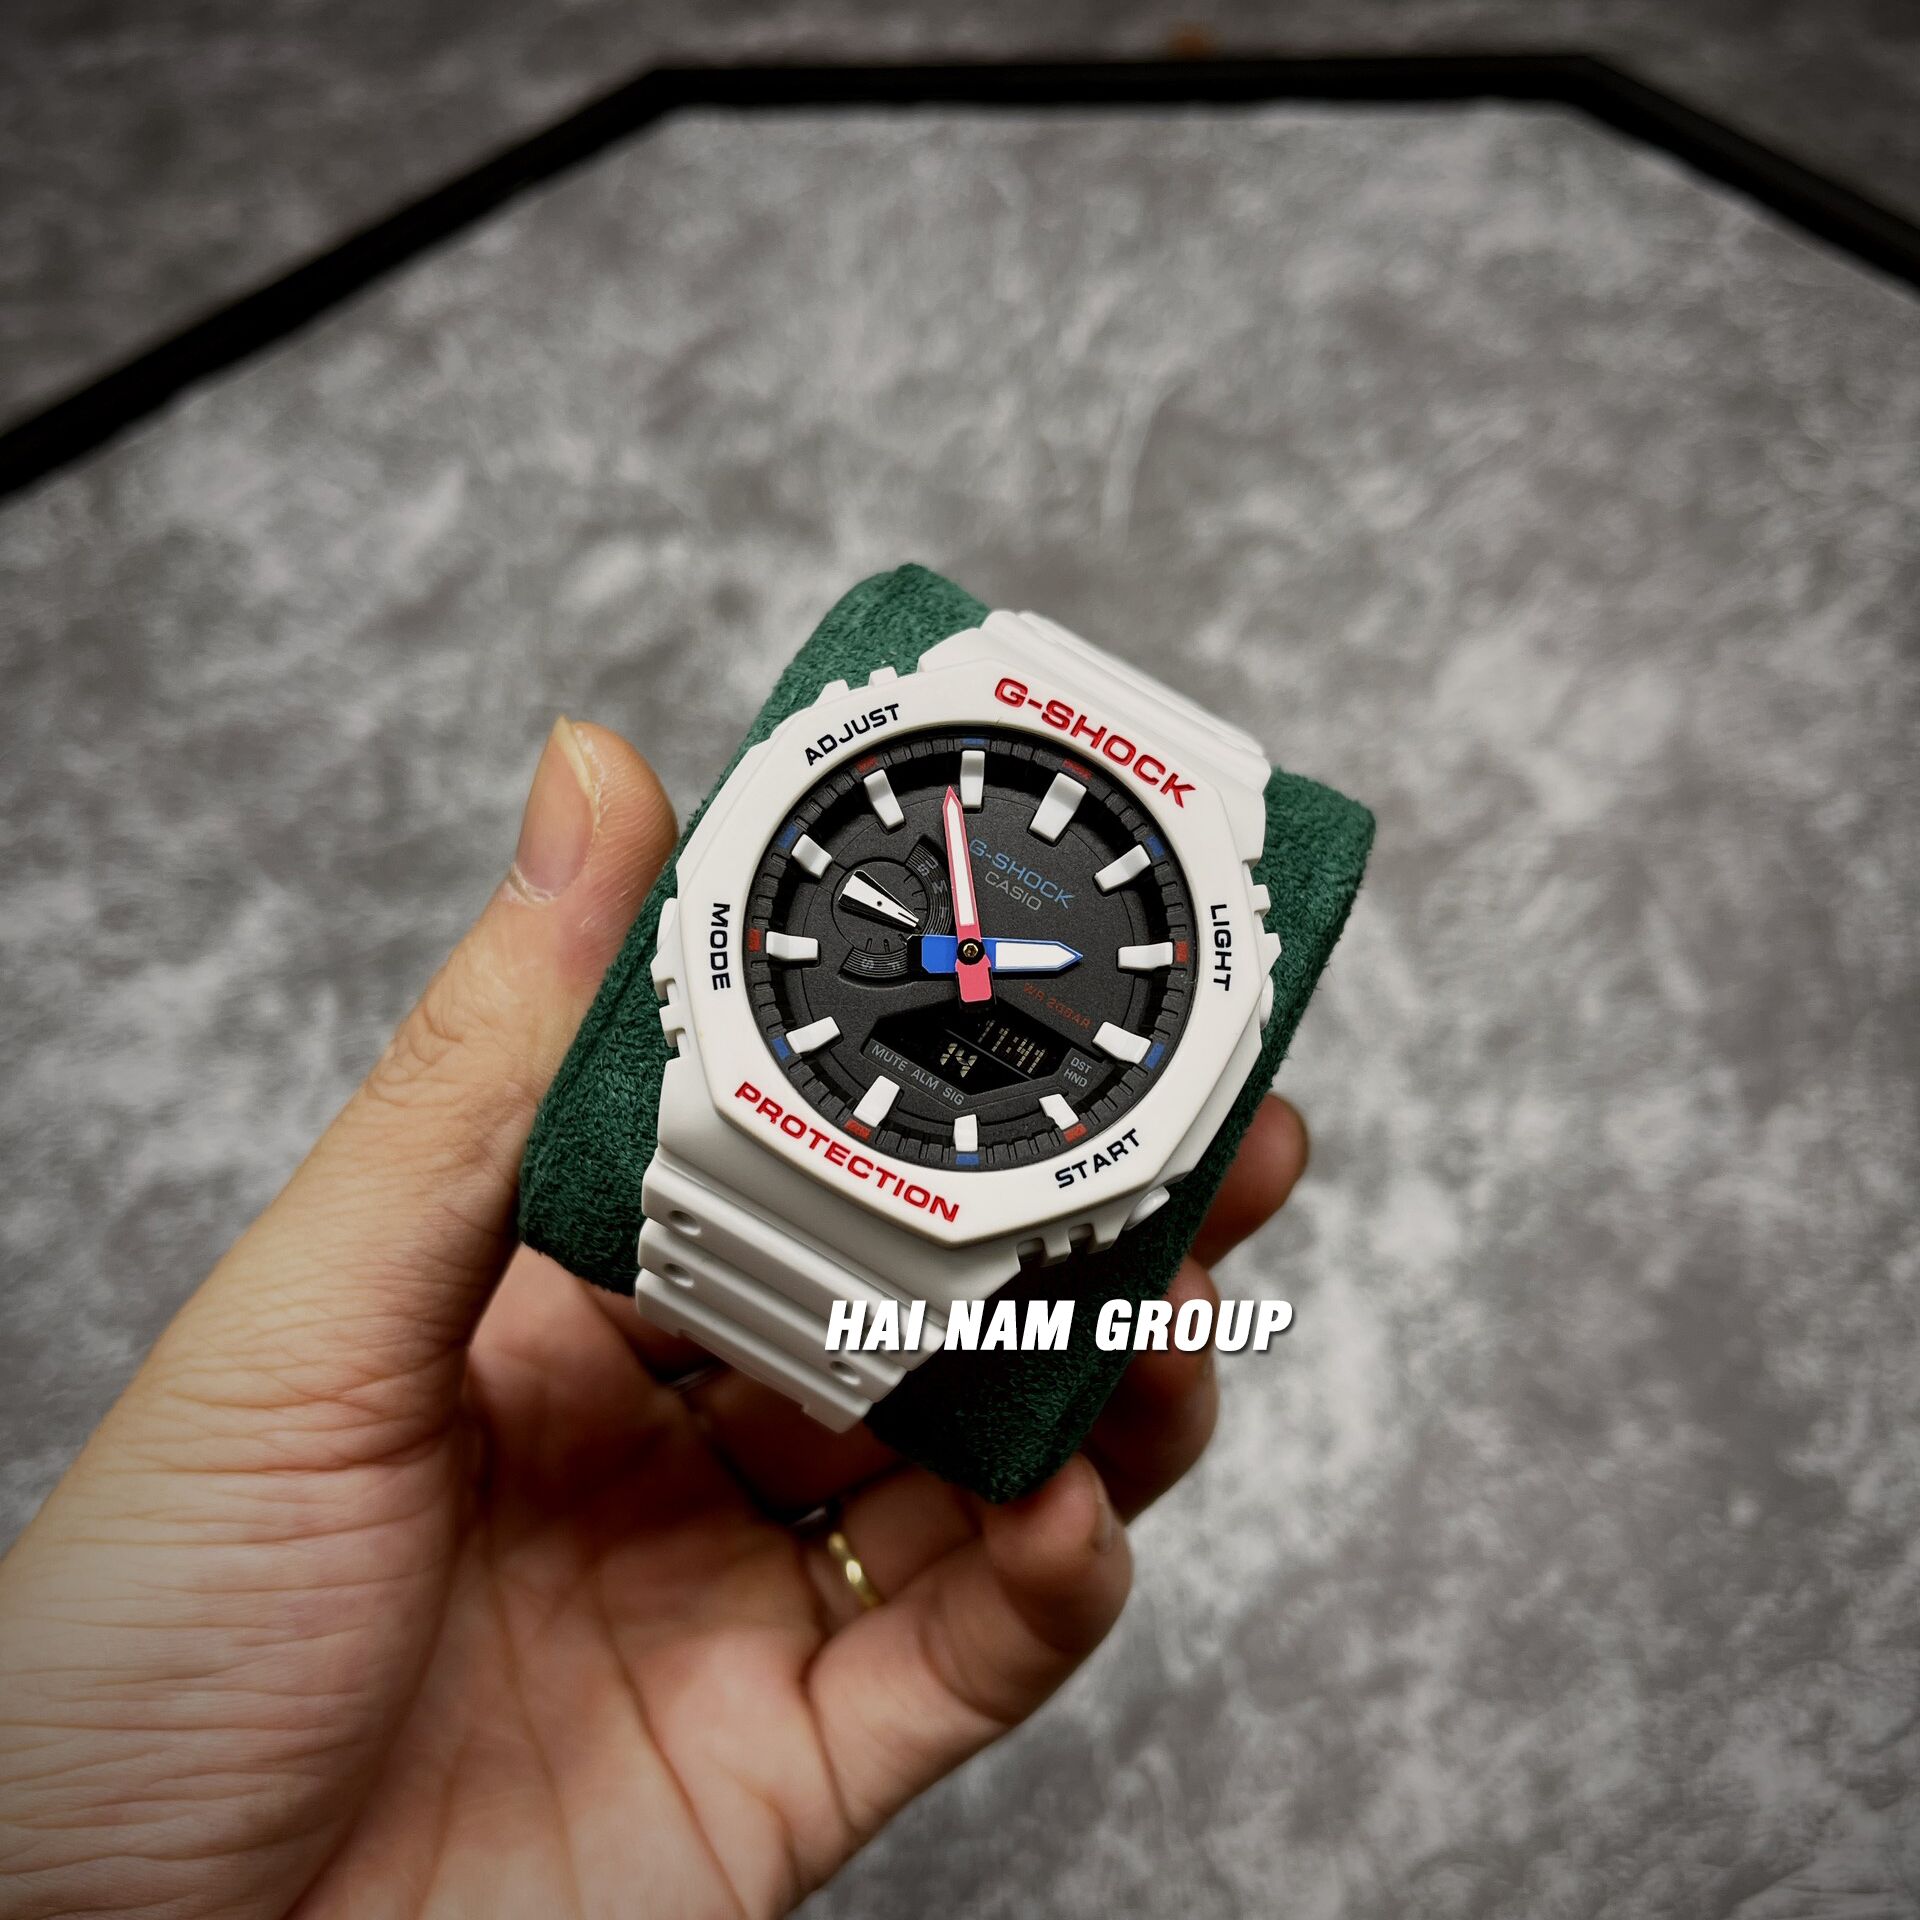 Đồng hồ nam nữ G-SHOCK GMA-S2100WT-7A1 Trắng mặt đen chữ xanh đỏ 2